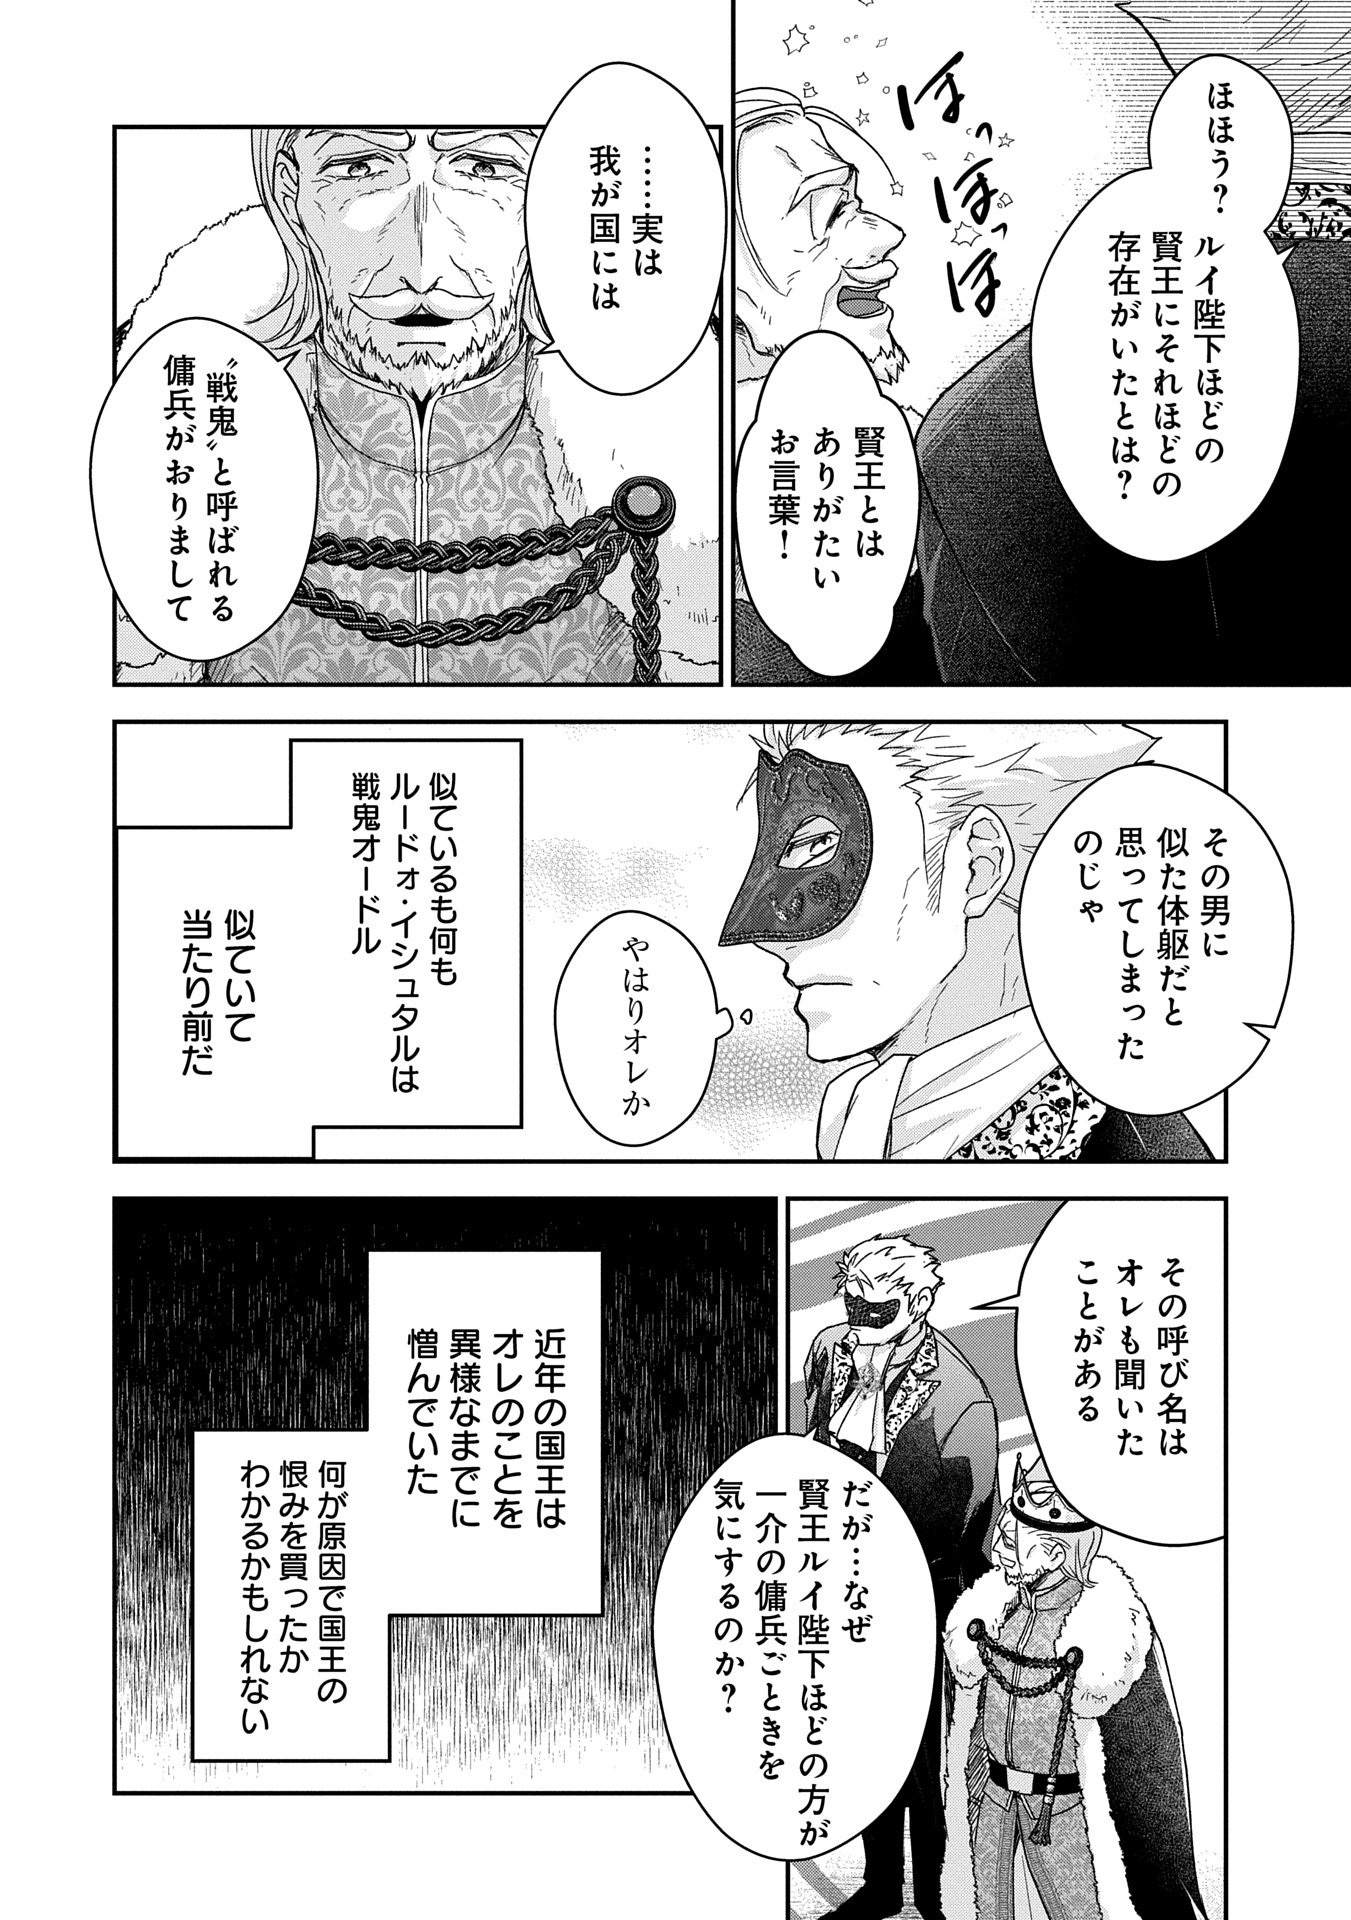 Senki to Yobareta Otoko, Puke ni Ansatsu Saretar Musume wo Hiroi, Issho ni Slow Life wo Hajimeru - Chapter 28.2 - Page 14